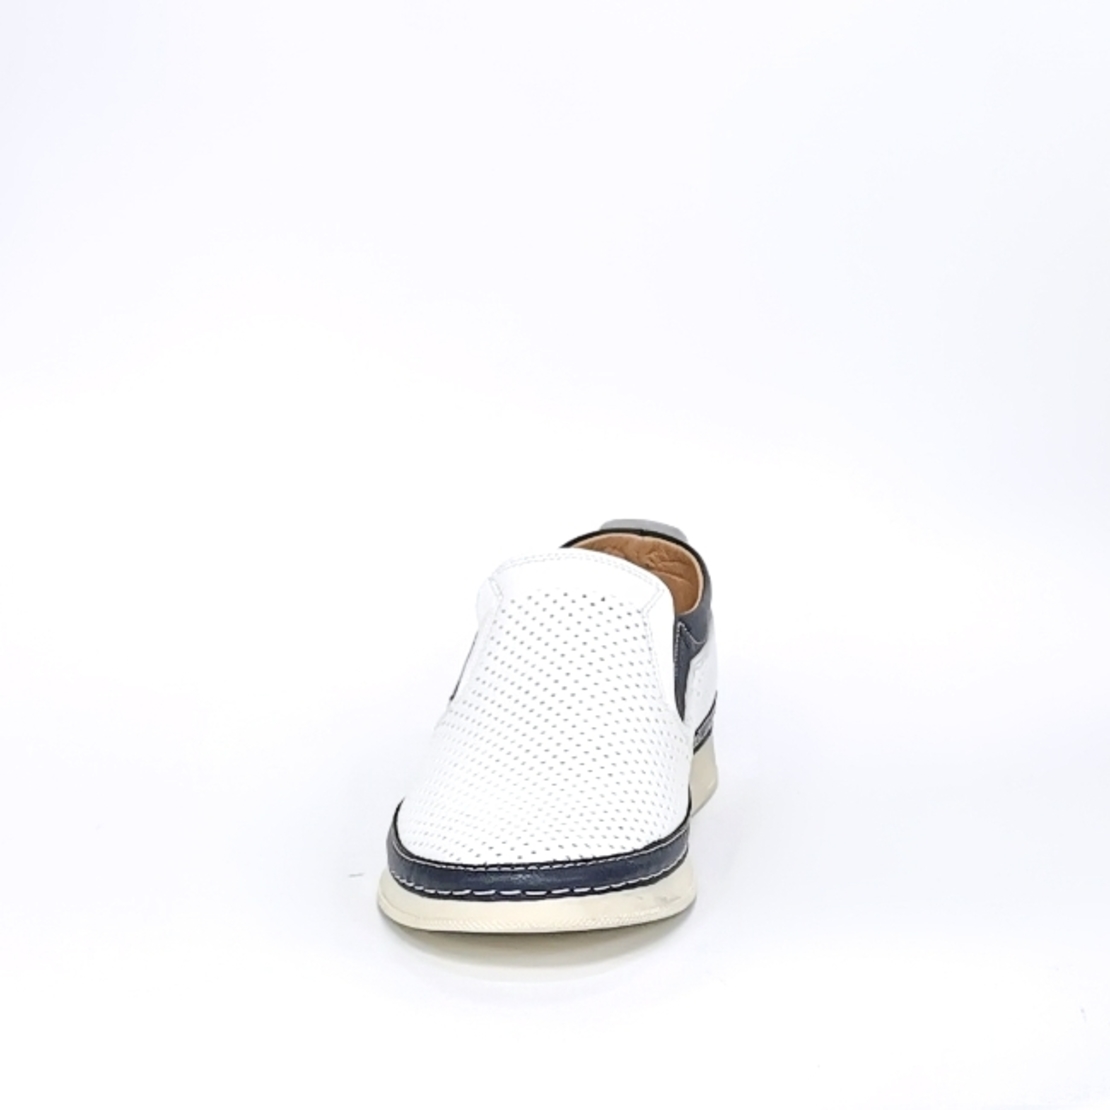 Мужская повседневная обувь из натуральной кожи цвета белый+синий 7205